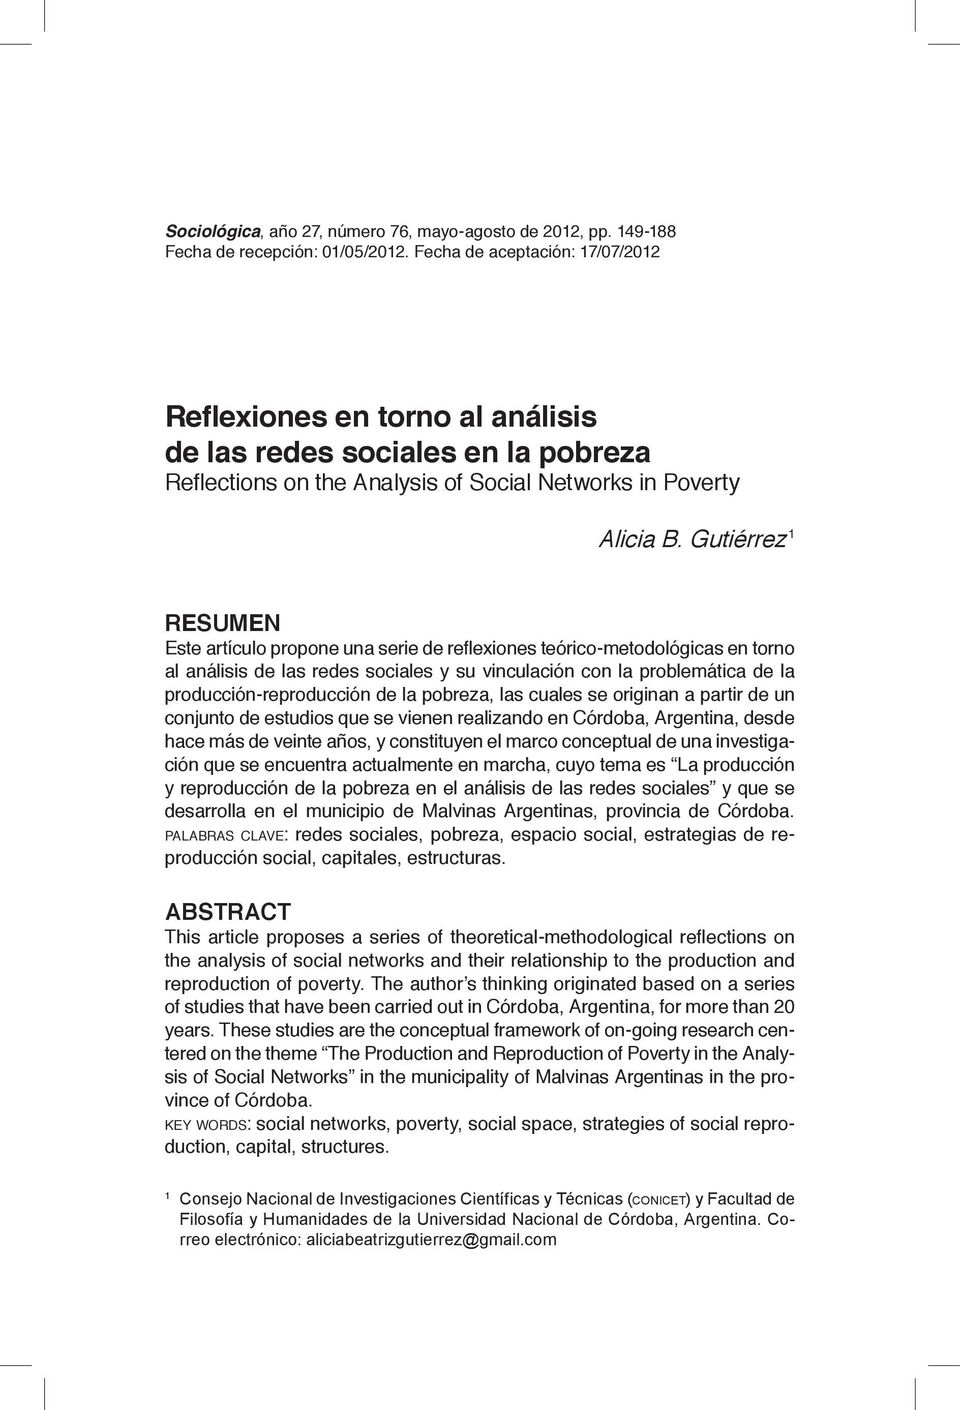 Gutiérrez 1 RESUMEN Este artículo propone una serie de reflexiones teórico-metodológicas en torno al análisis de las redes sociales y su vinculación con la problemática de la producción-reproducción